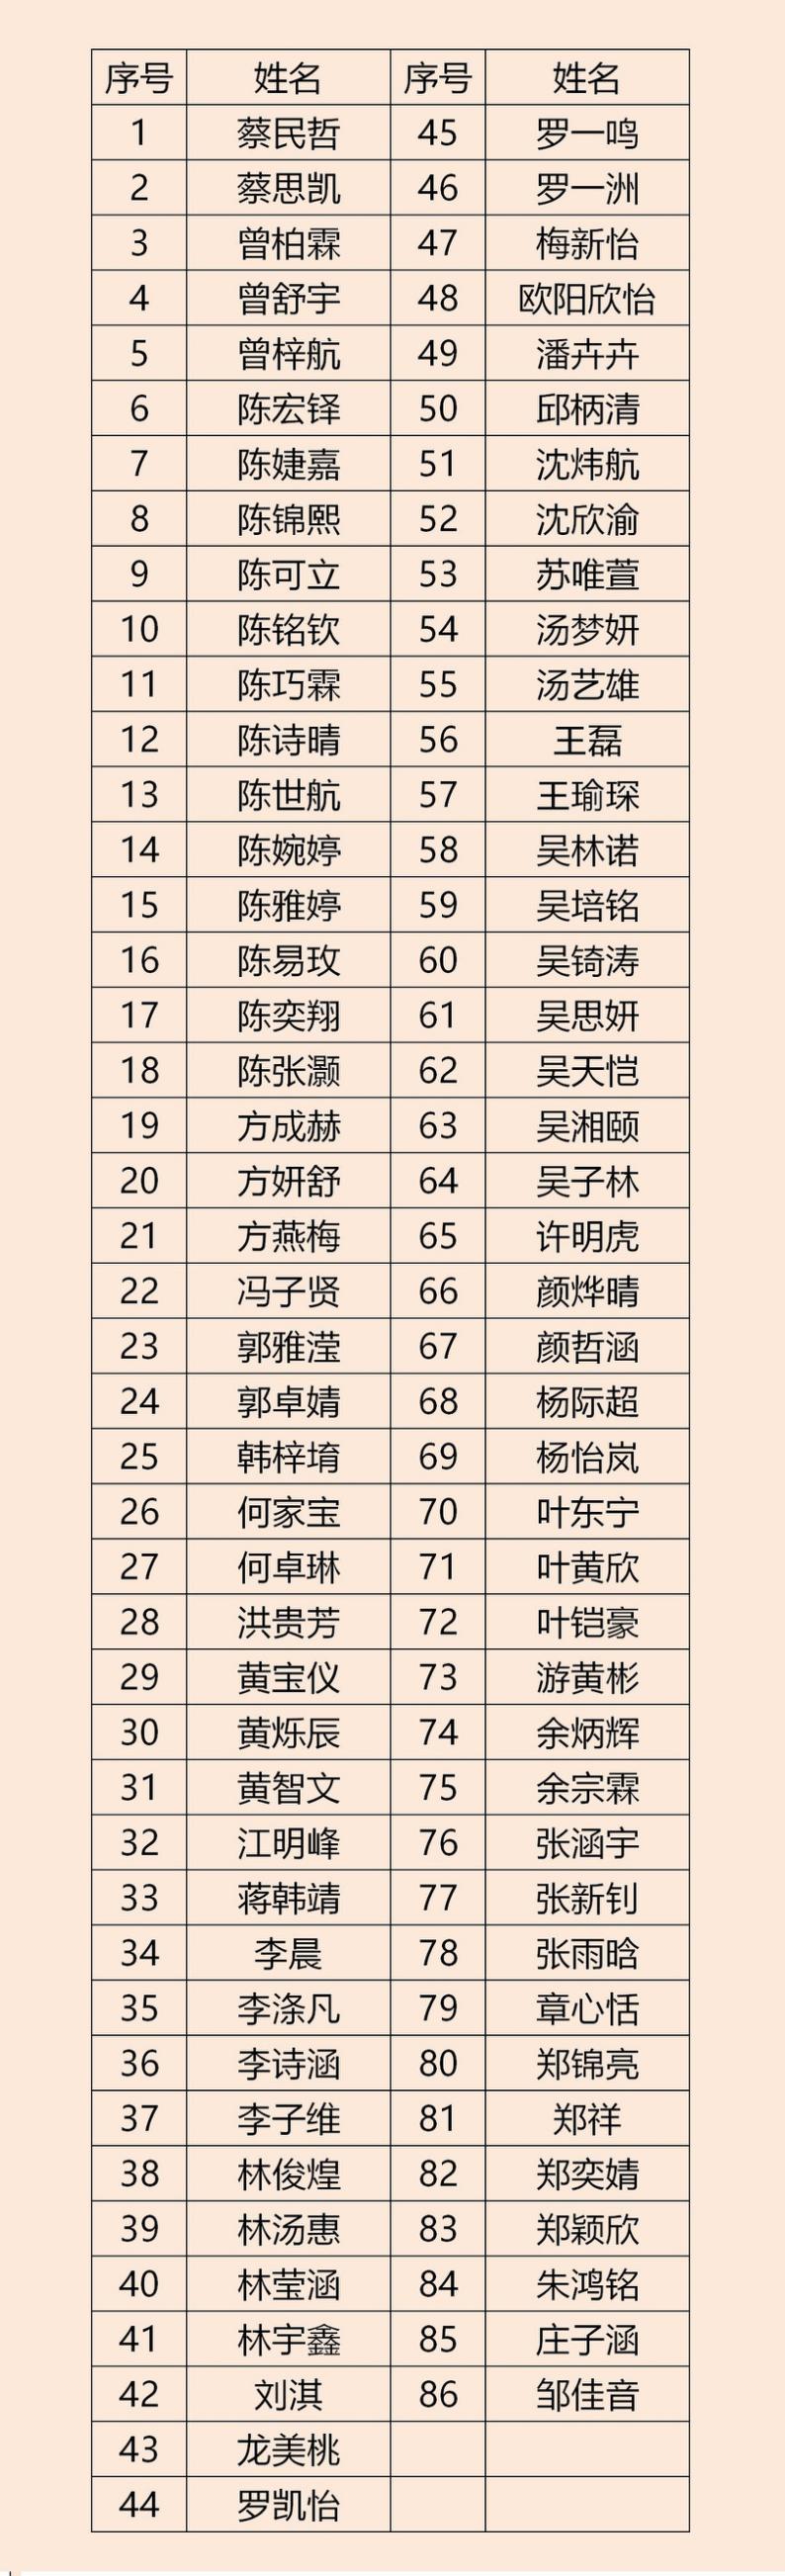 漳州二中2021级创新班自招预录取名单公告